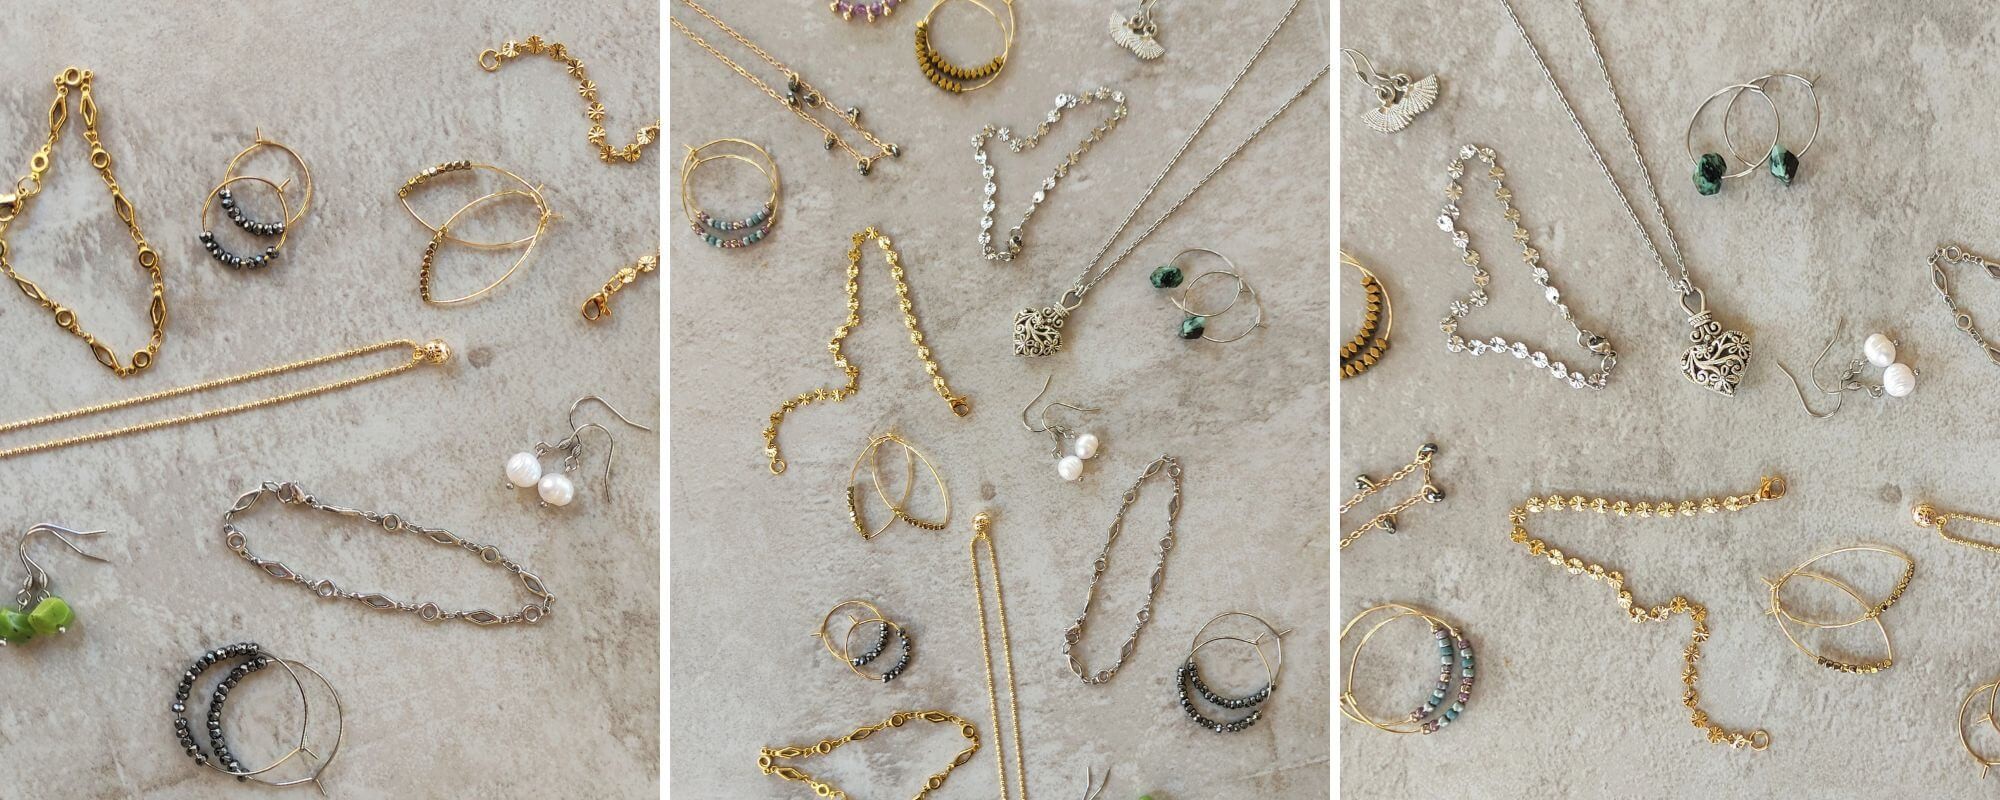 יצירת אוסף תכשיטים מושלם - שהם תכשיטים בוהמיינים